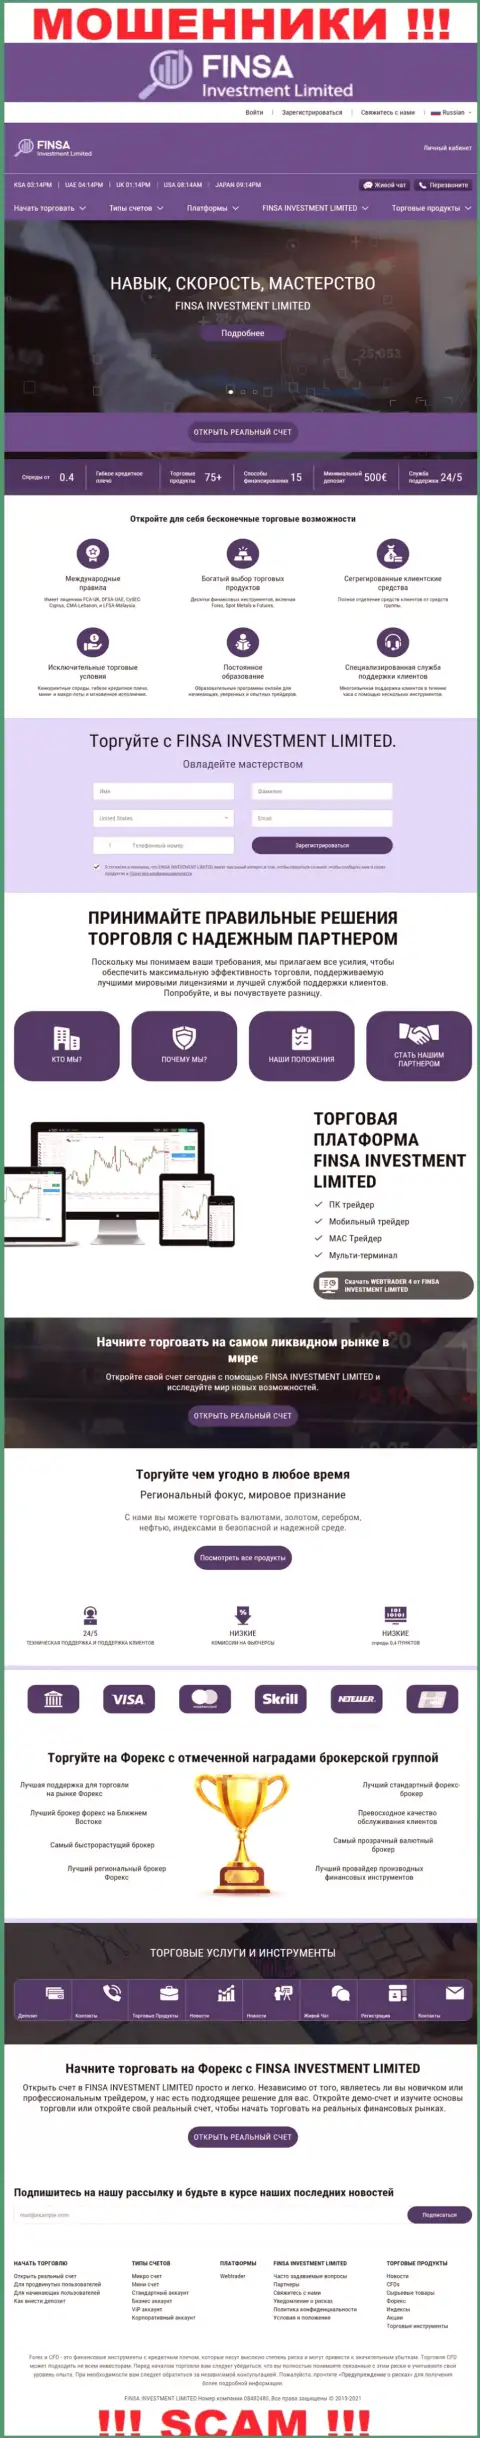 Веб-сайт конторы FinsaInvestmentLimited, заполненный неправдивой информацией